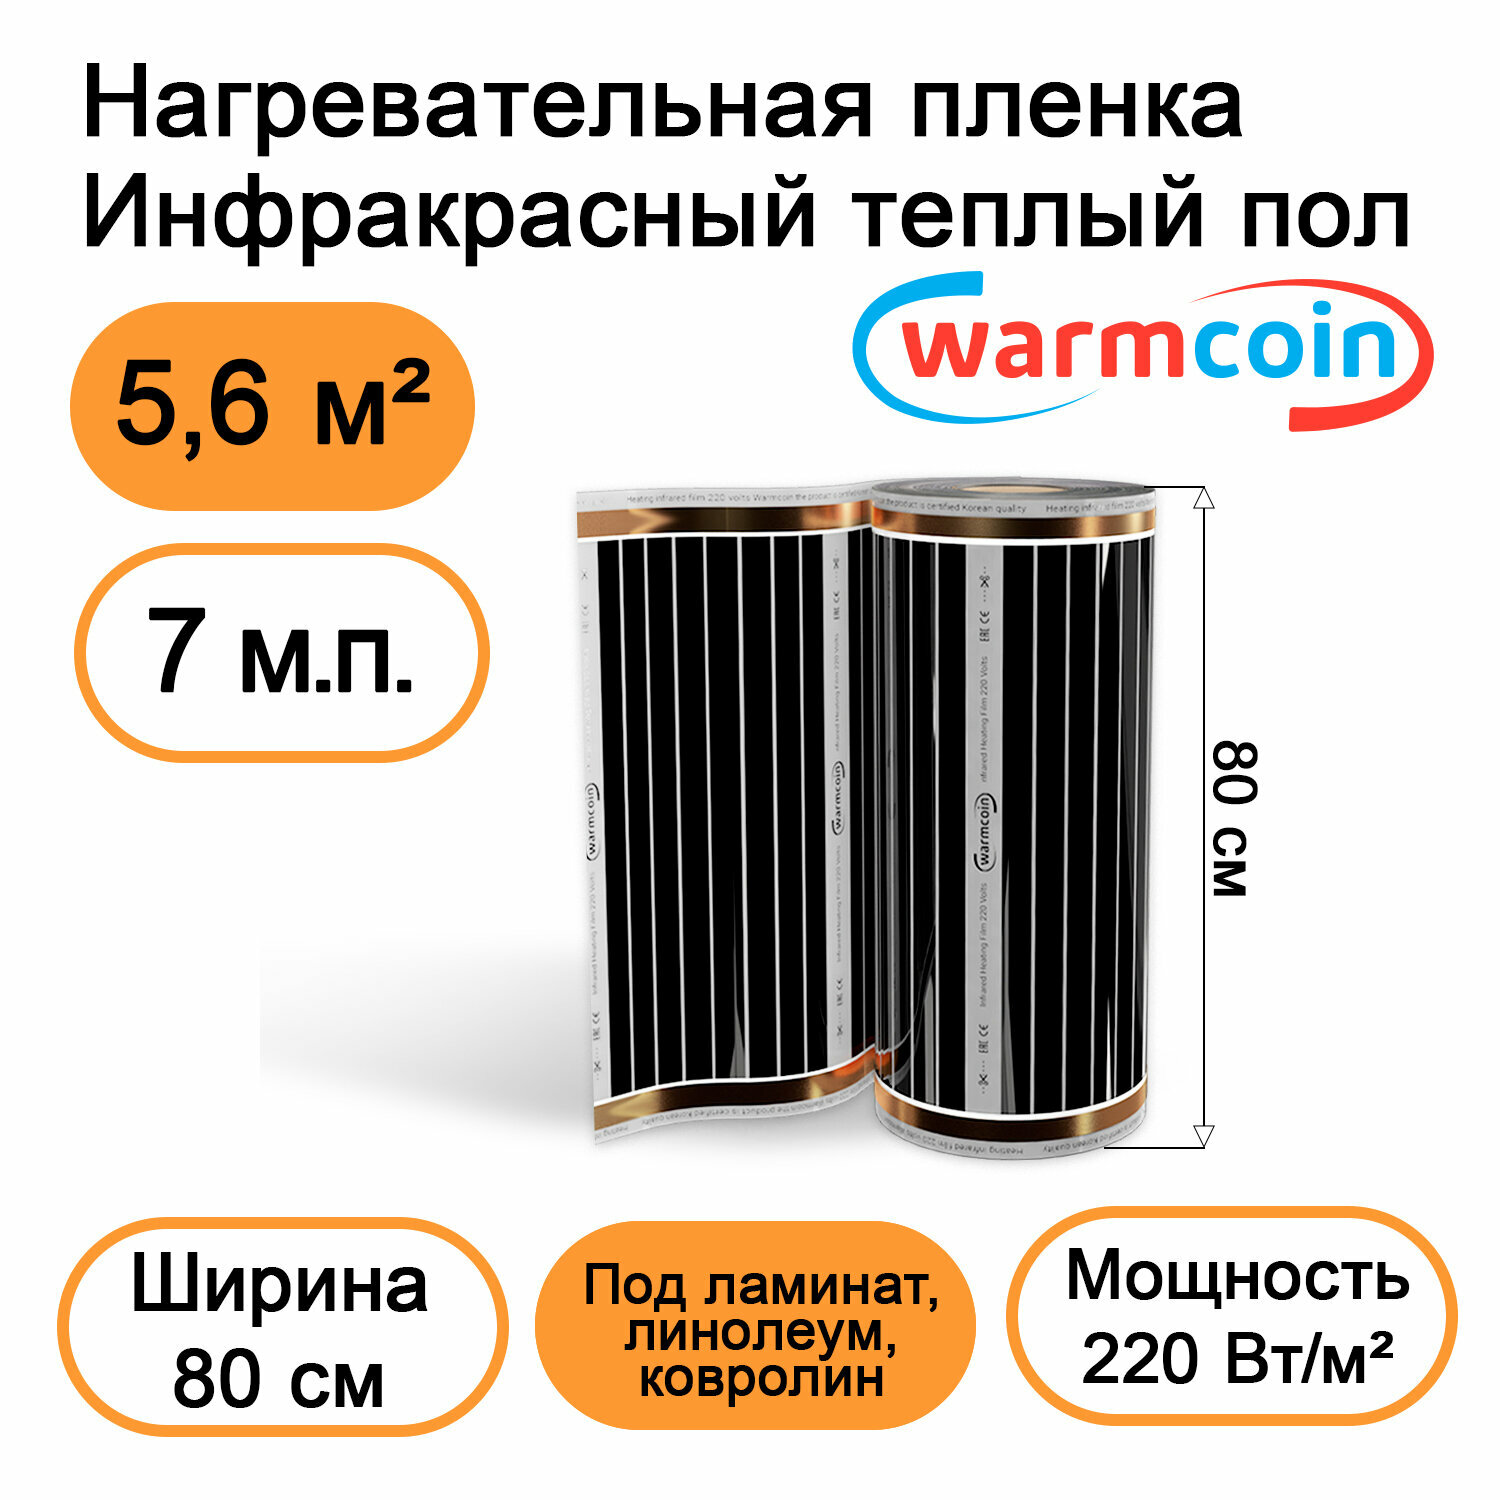 Теплый пол Warmcoin инфракрасный 80 см 220Вт/м.кв. под ламинат, 7 м.п